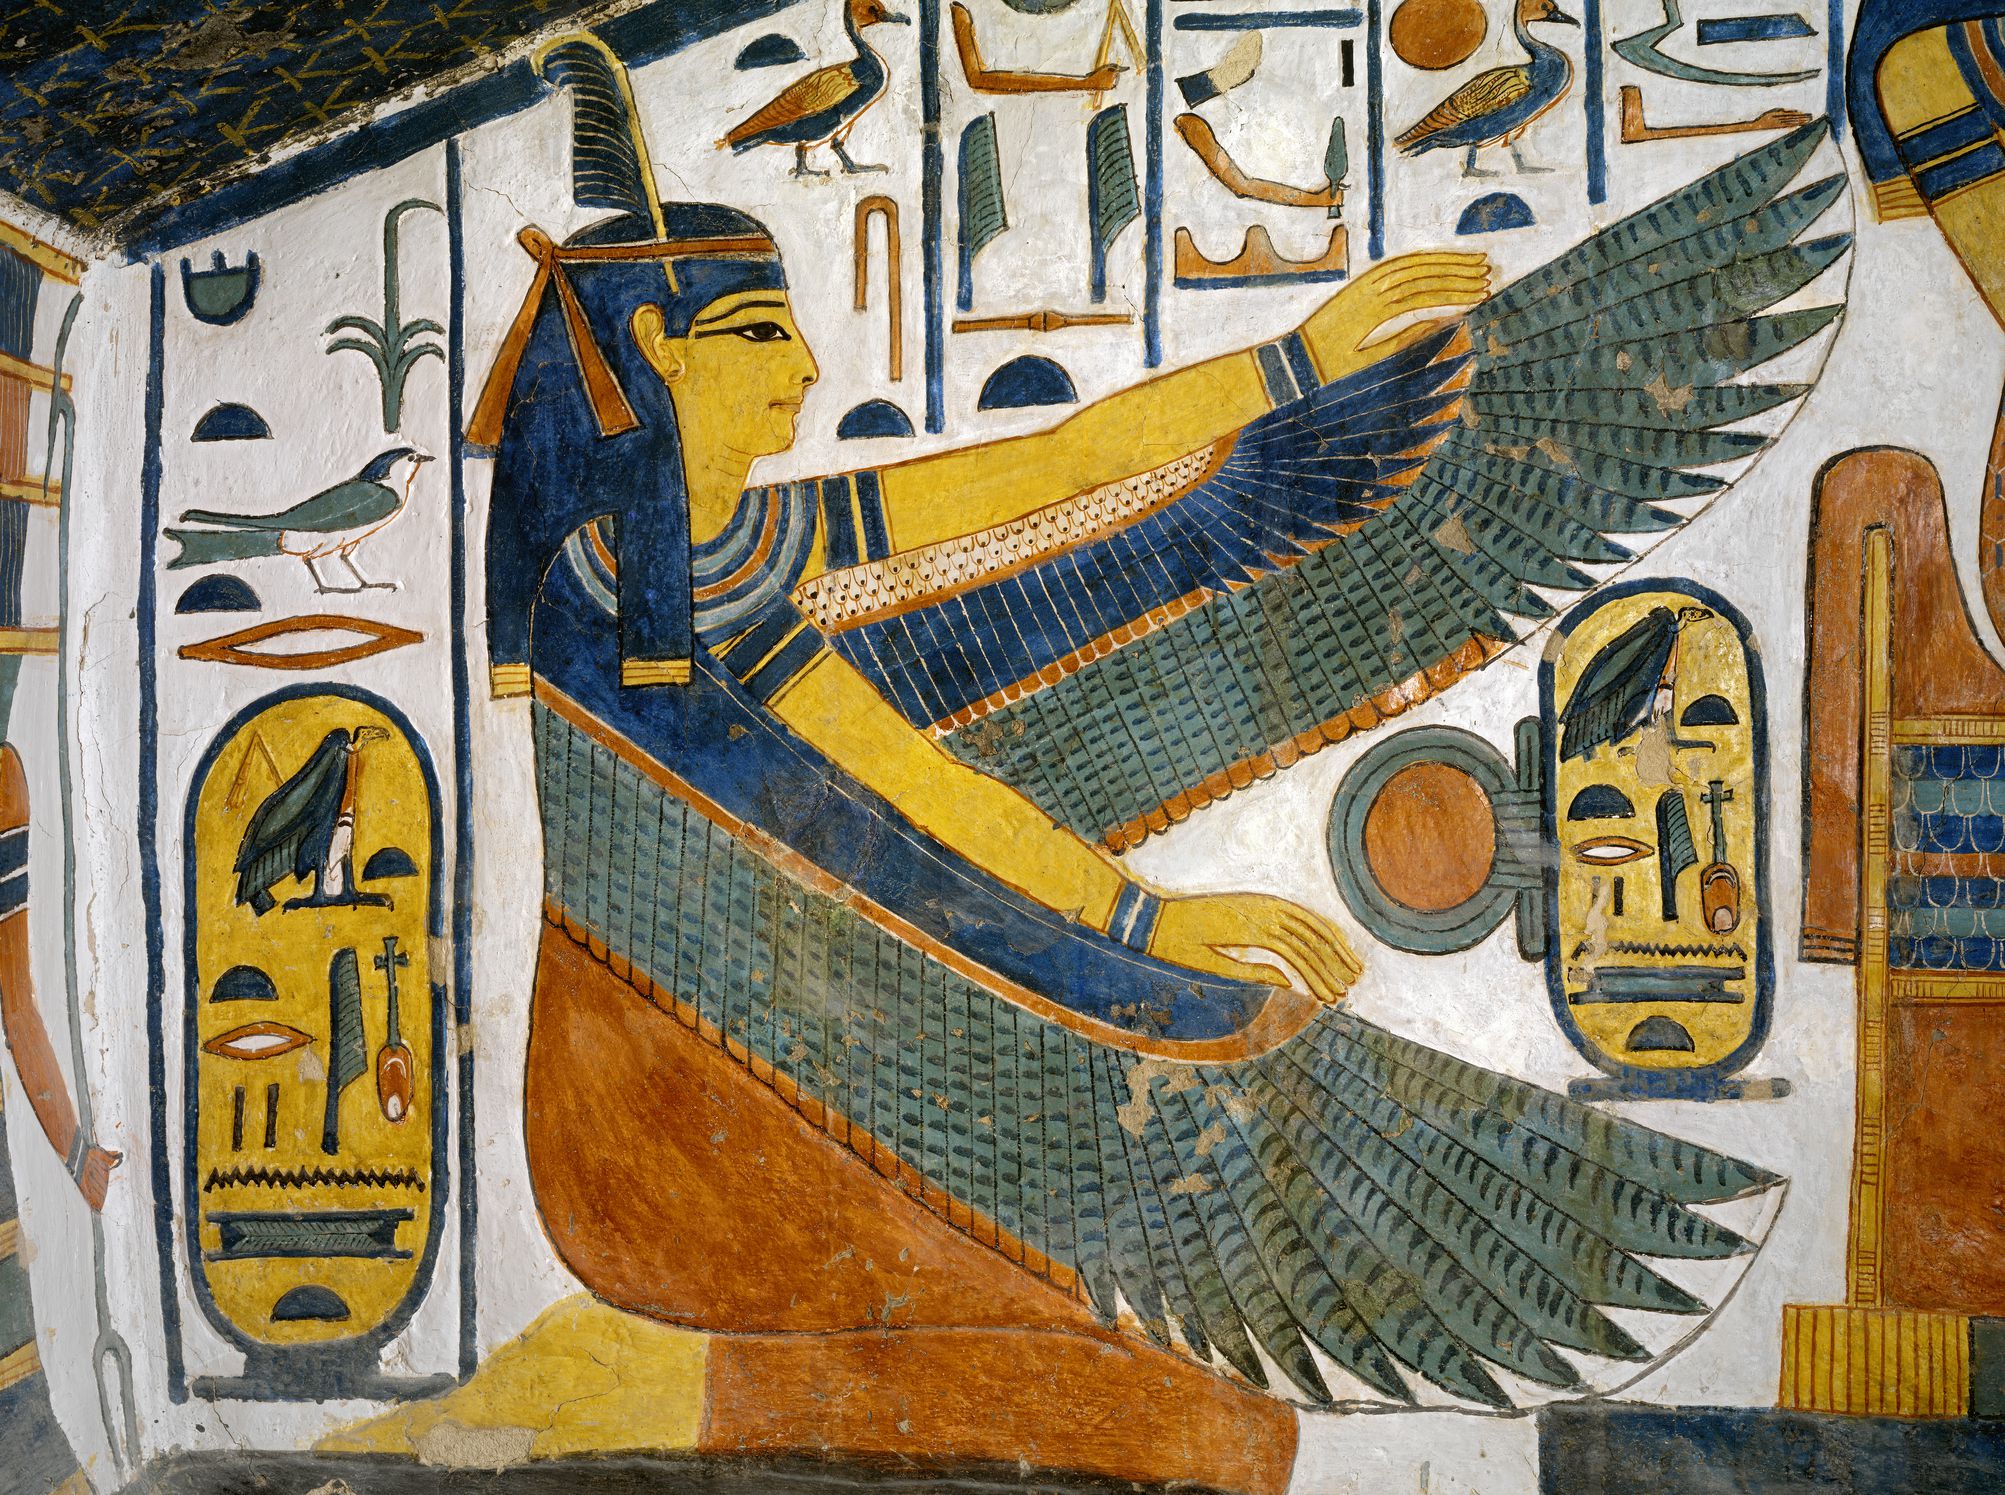 Ma'at, diosa egipcia de la verdad y el equilibrio